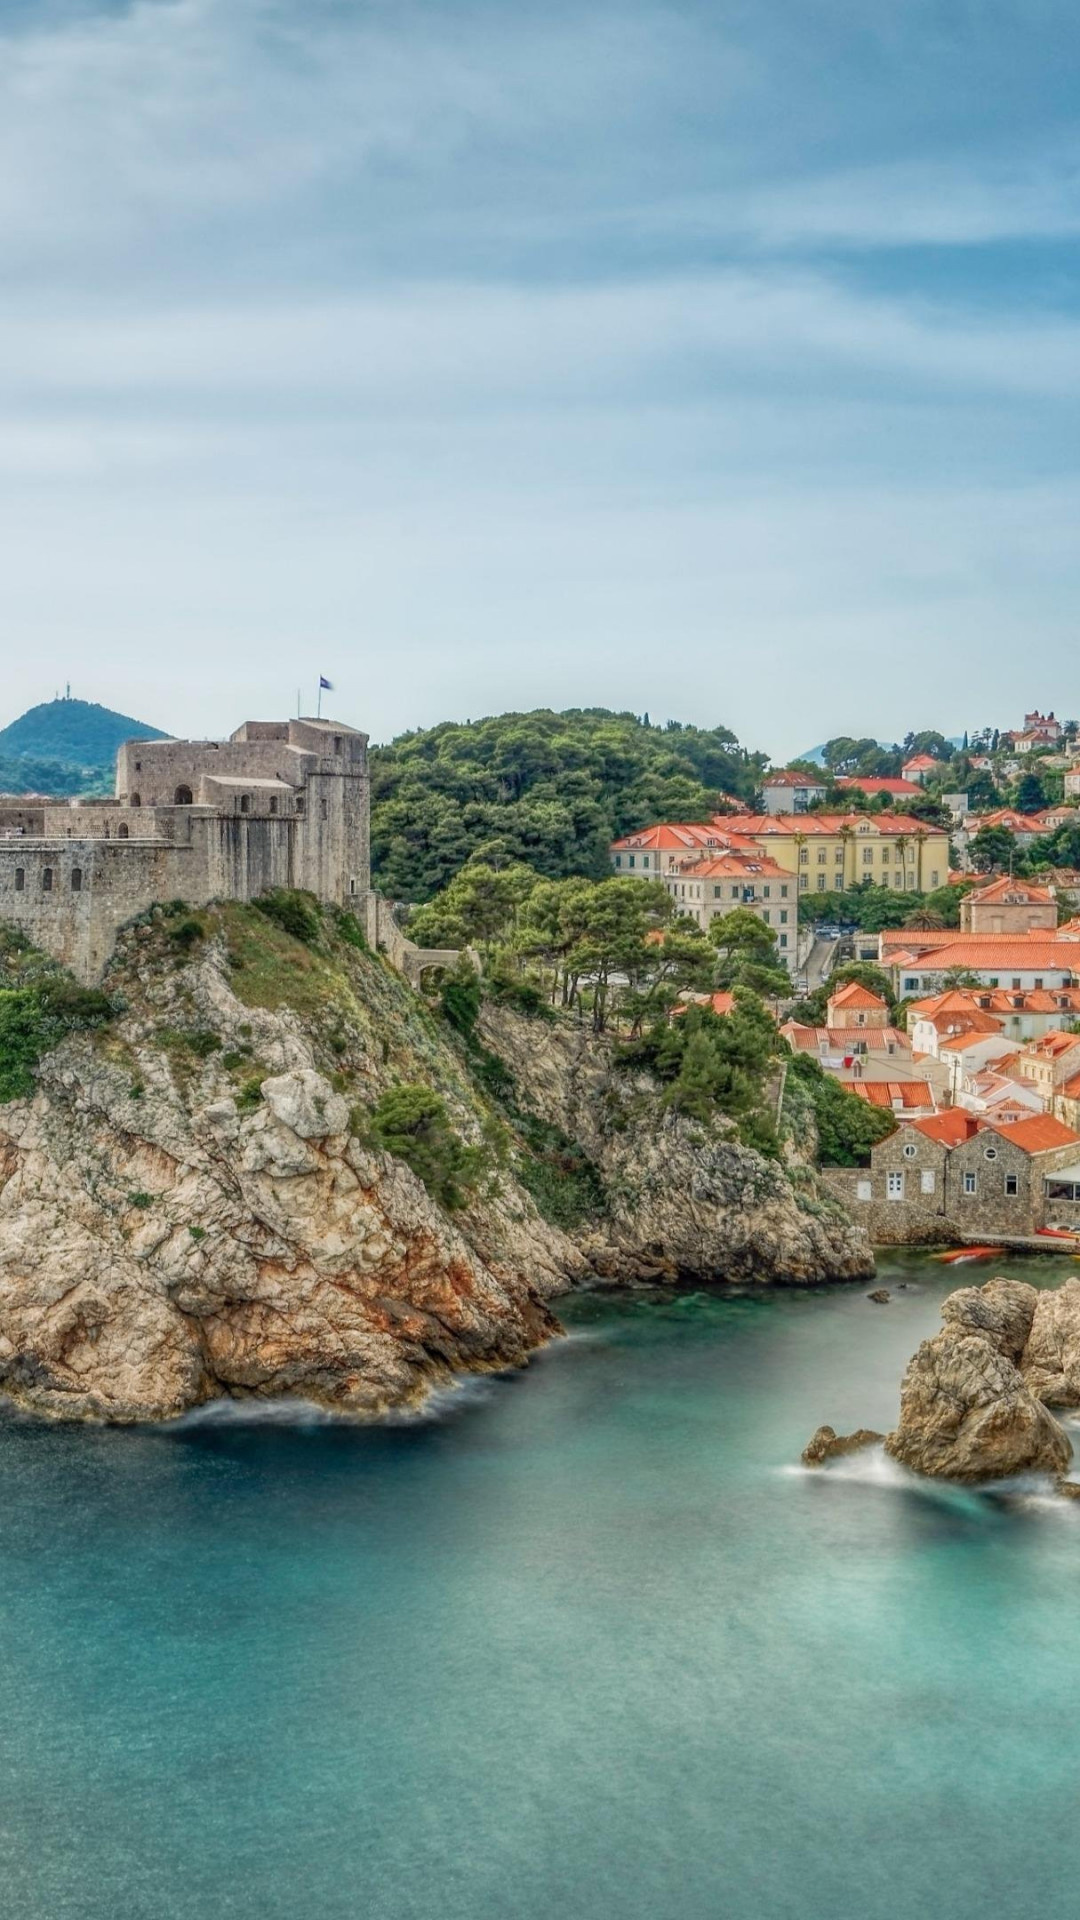 Croatia: Croatian coastline, The east side of the Adriatic Sea. 1080x1920 Full HD Background.